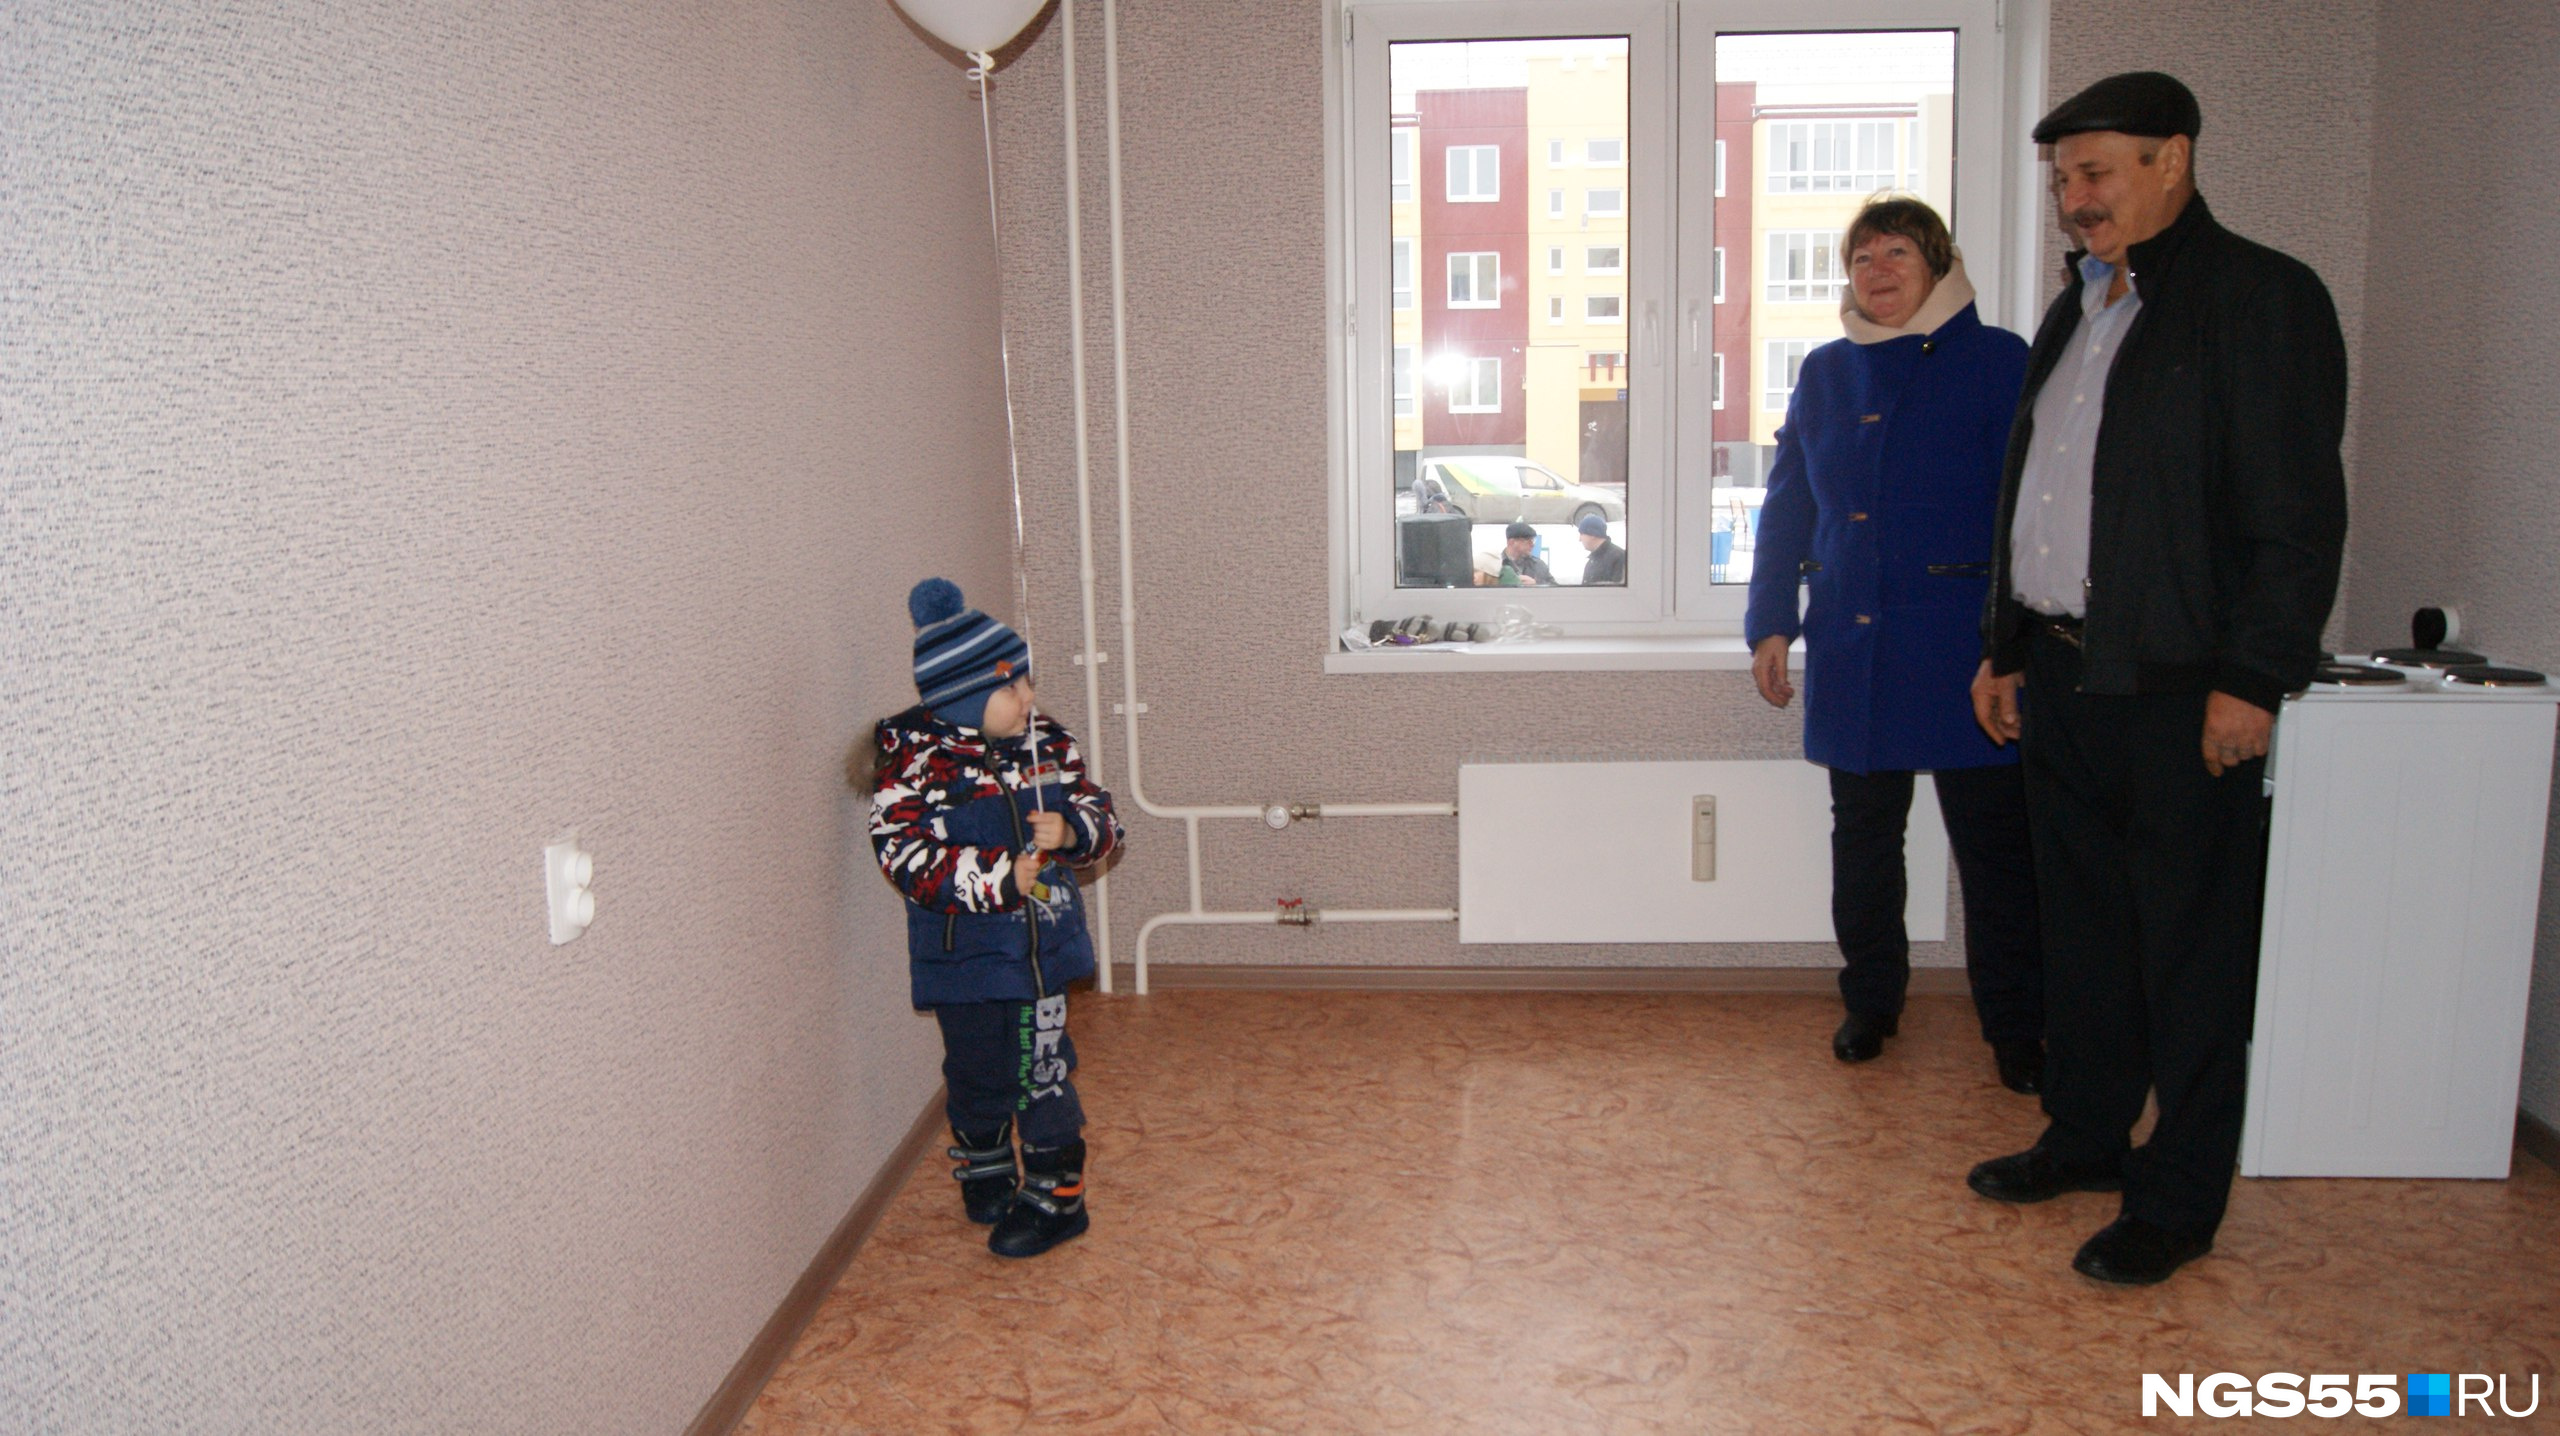 Мальчик с шариком побежал изучать просторы новой квартиры